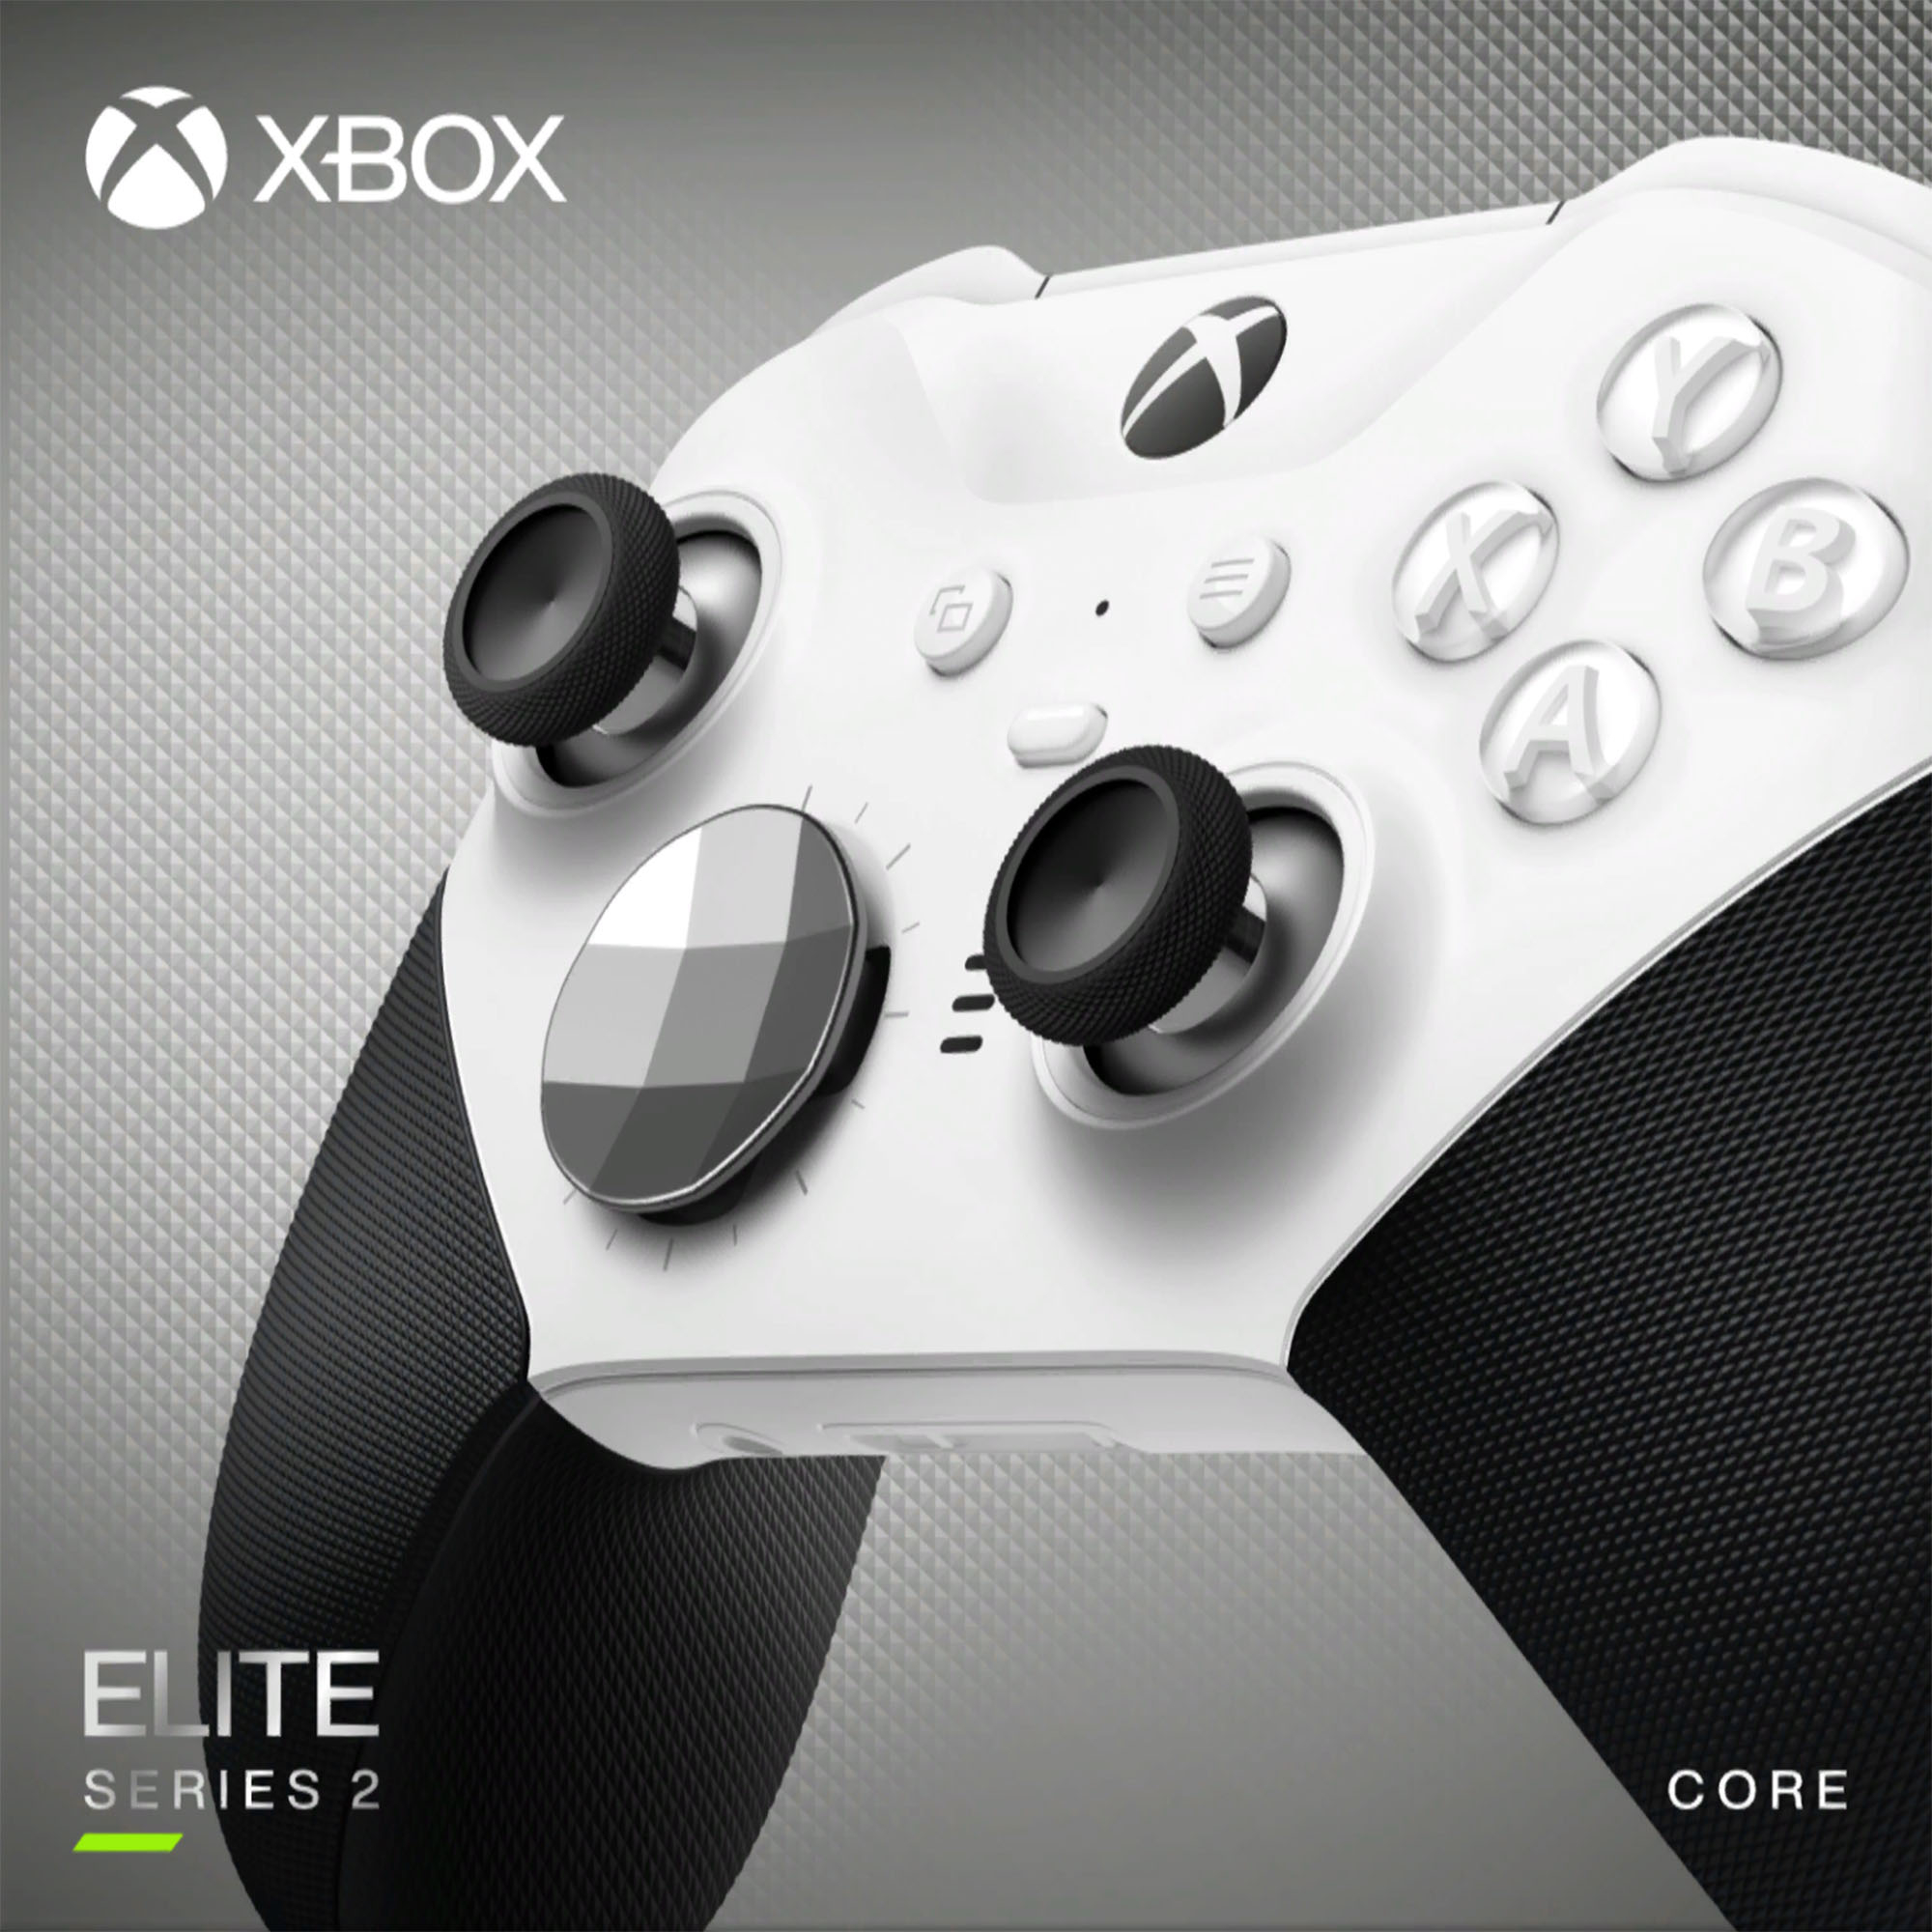 Manette sans fil Microsoft Xbox Elite Series 2 Core bleu